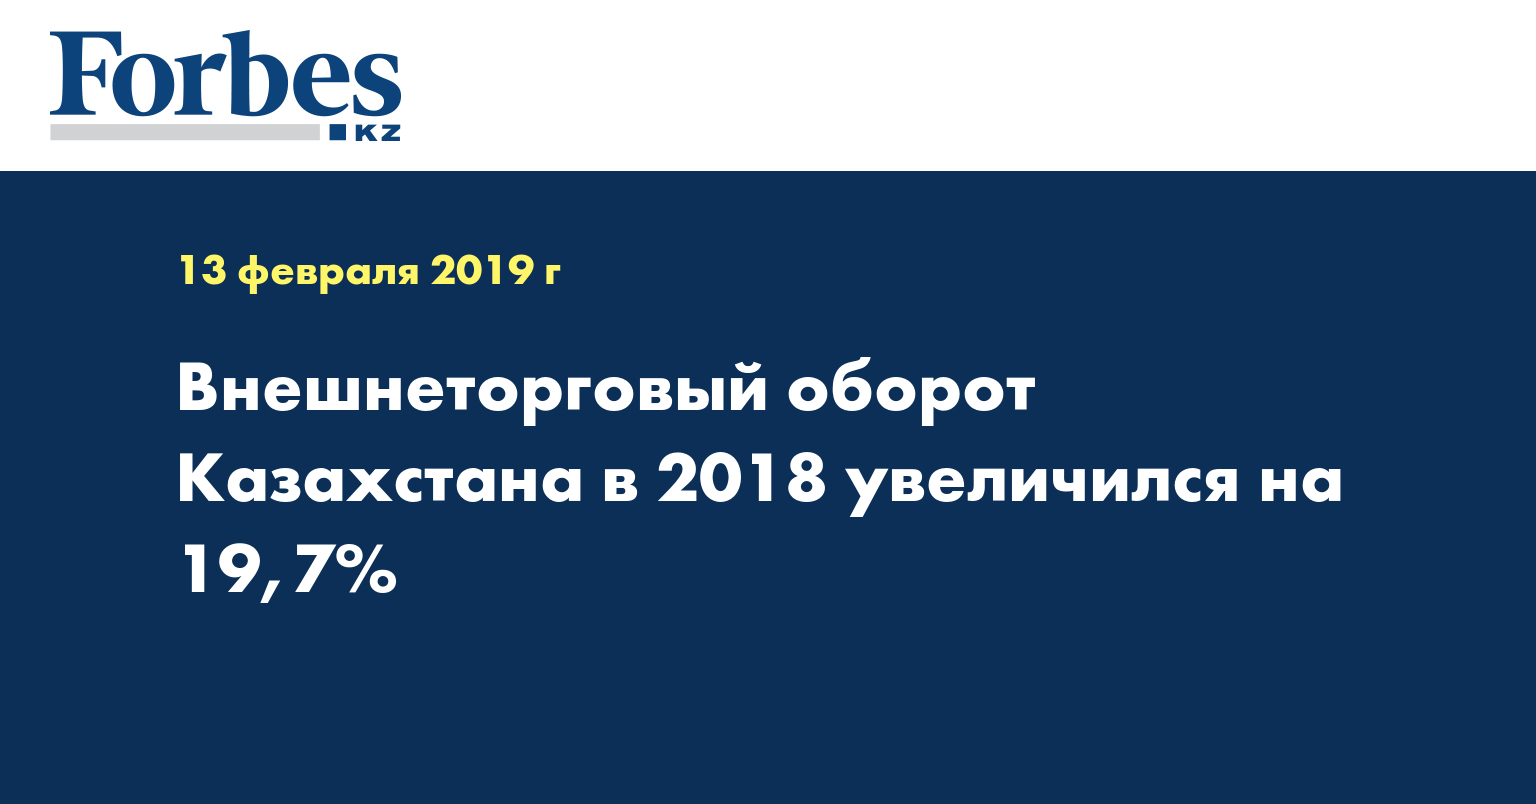 Внешнеторговый оборот Казахстана в 2018 увеличился на 19,7%